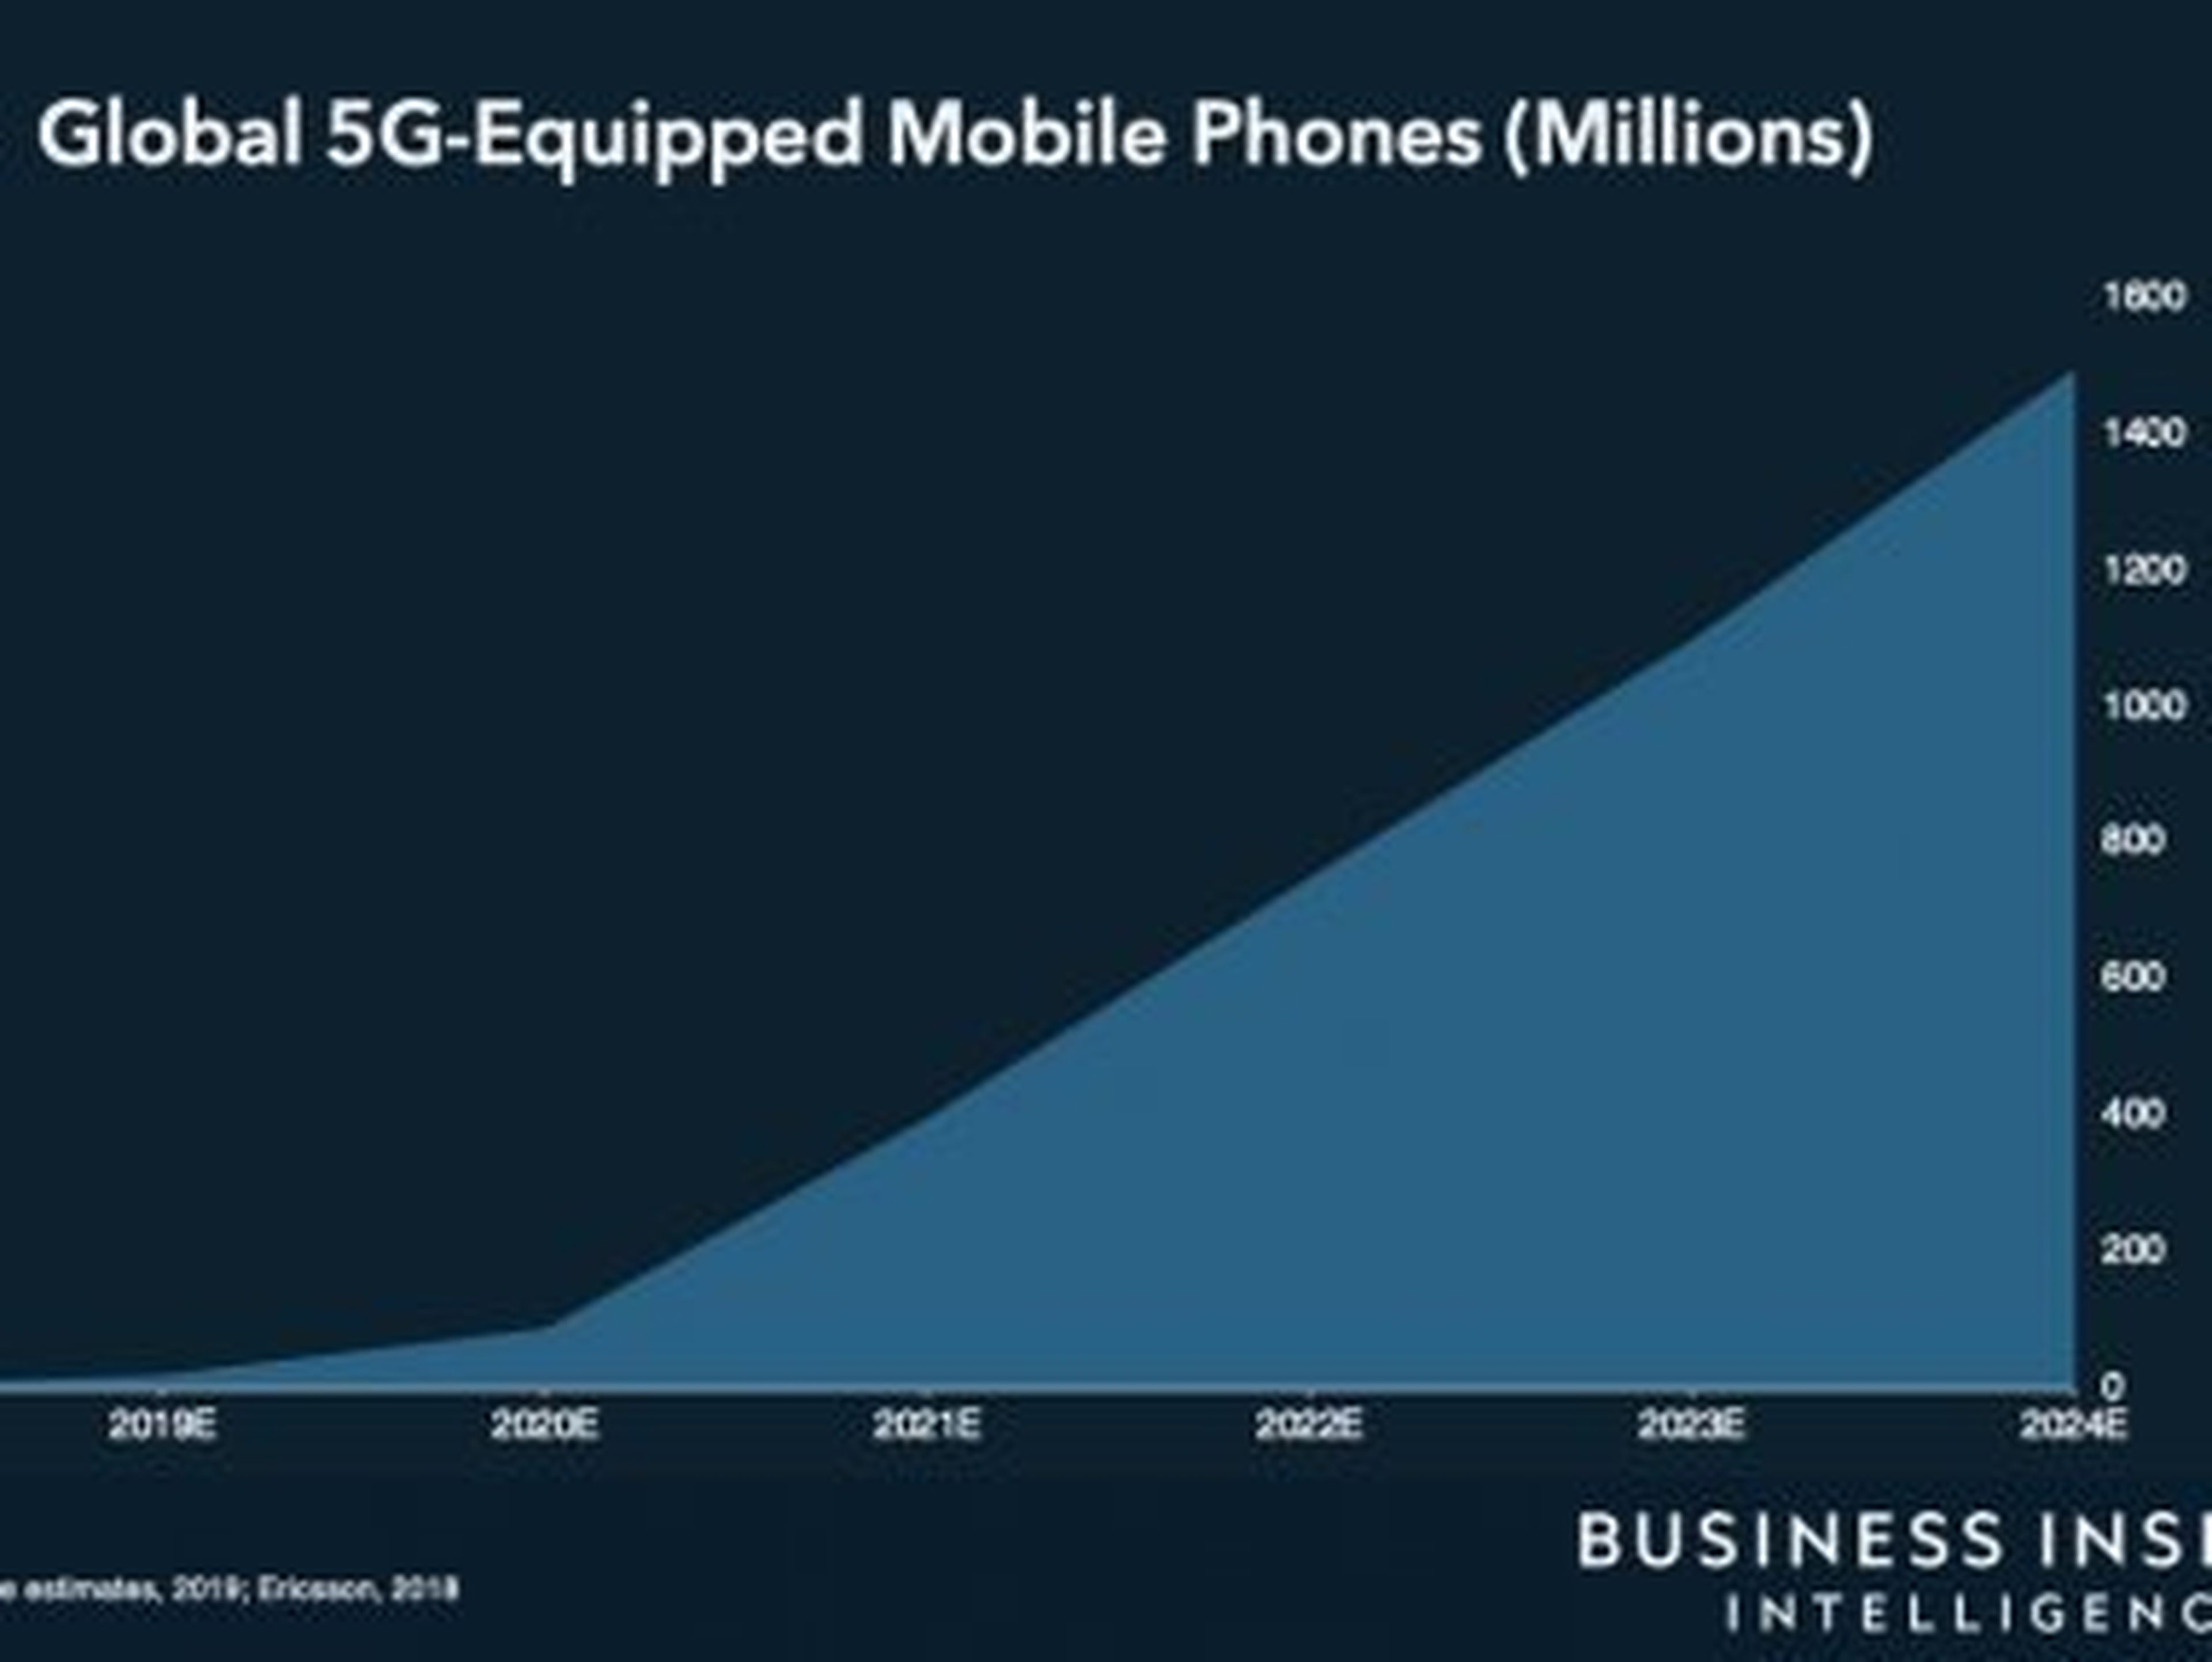 Base global de móviles compatibles con redes 5G, durante los próximos 5 años.